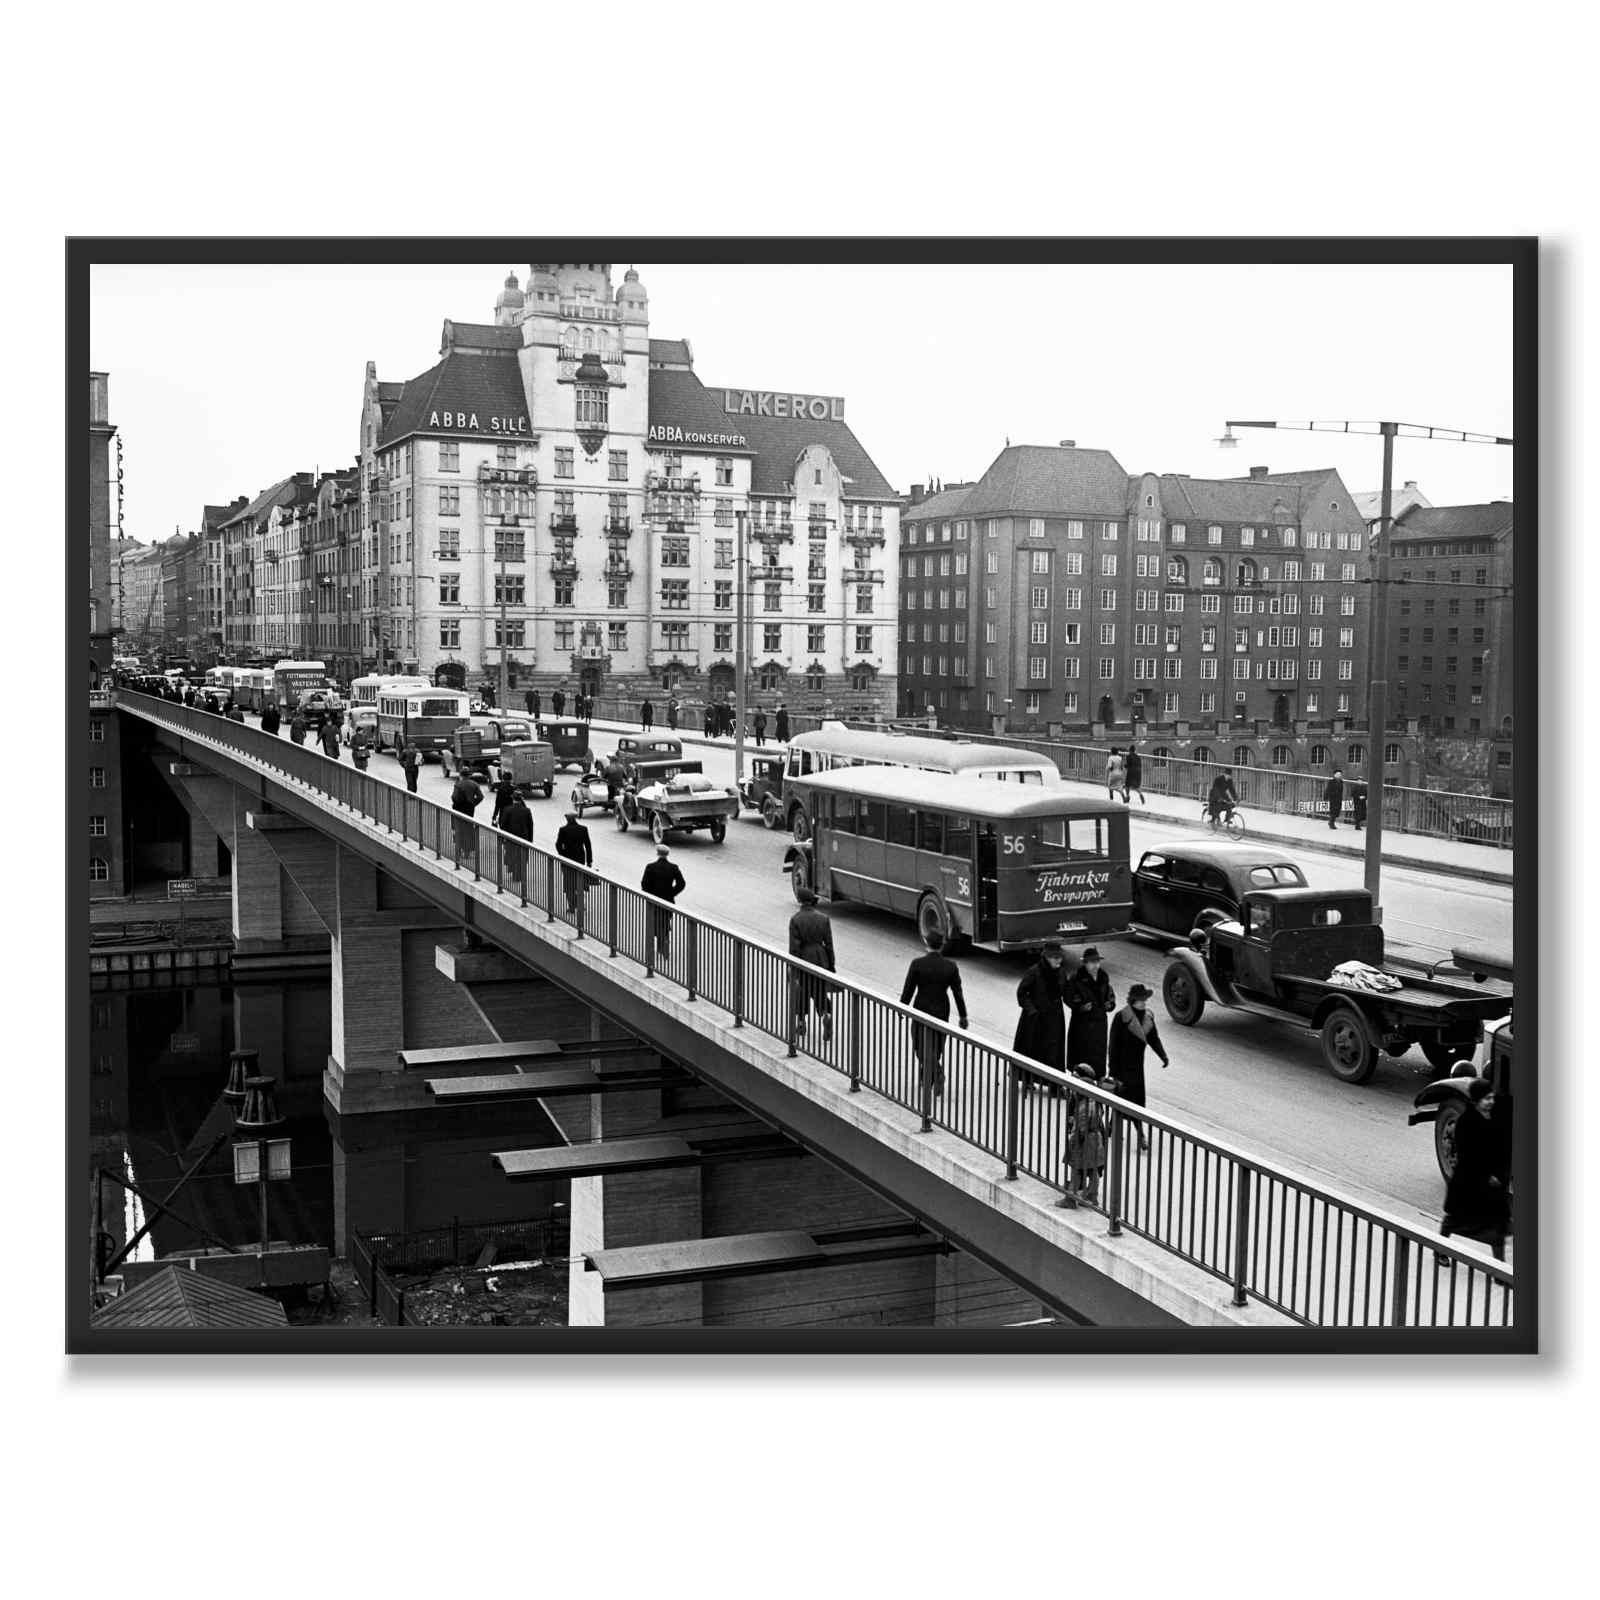 St. Eriks bro i 1940